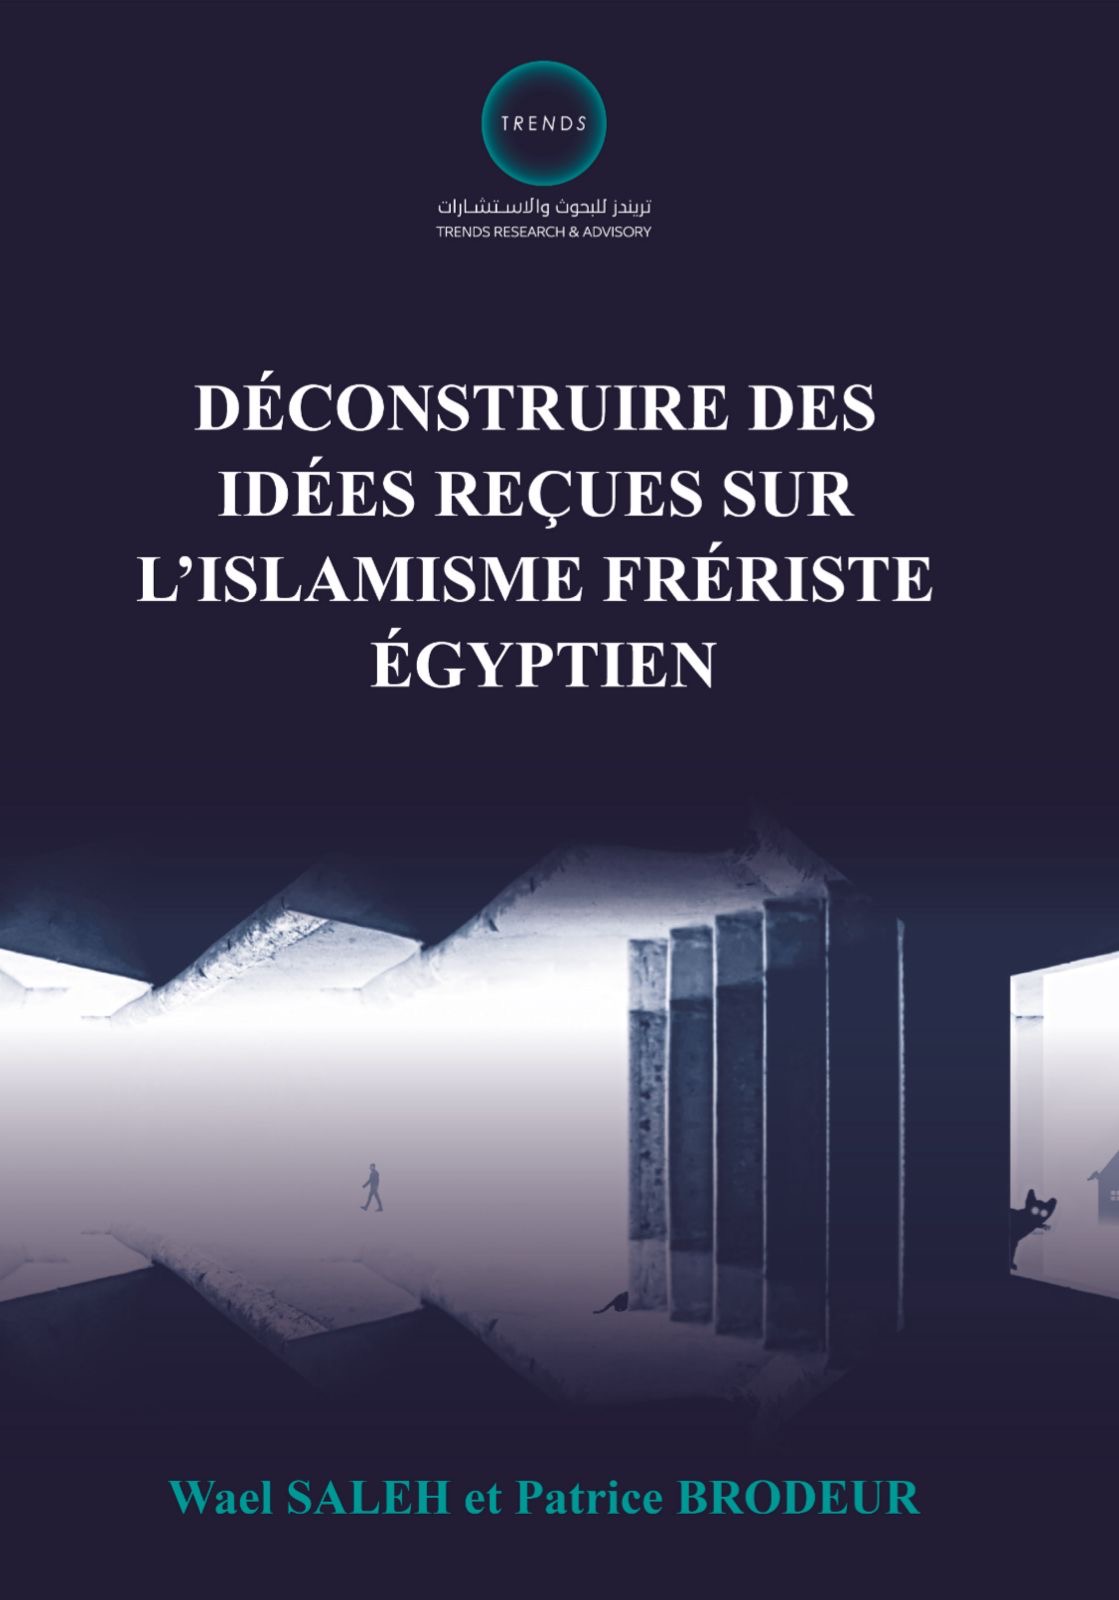 تريندز يطلق كتاباً جديداً بالفرنسية يُفكك الأفكار النمطية عن إسلاموية جماعة الإخوان المصرية